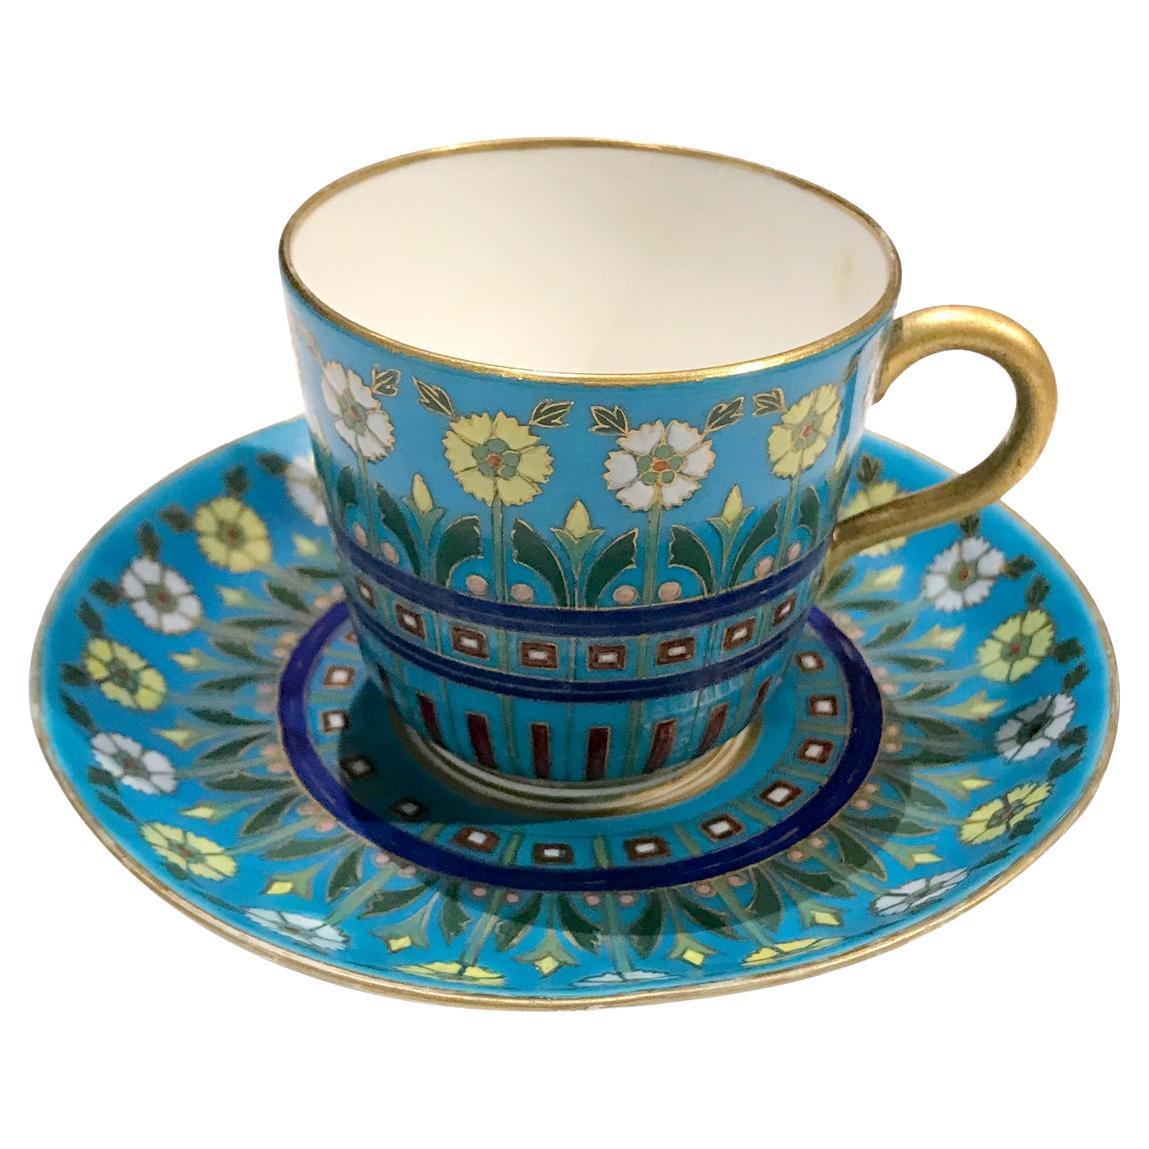 Minton-Kaffeetasse im Cloisonné-Stil, Christopher Dresser zugeschrieben